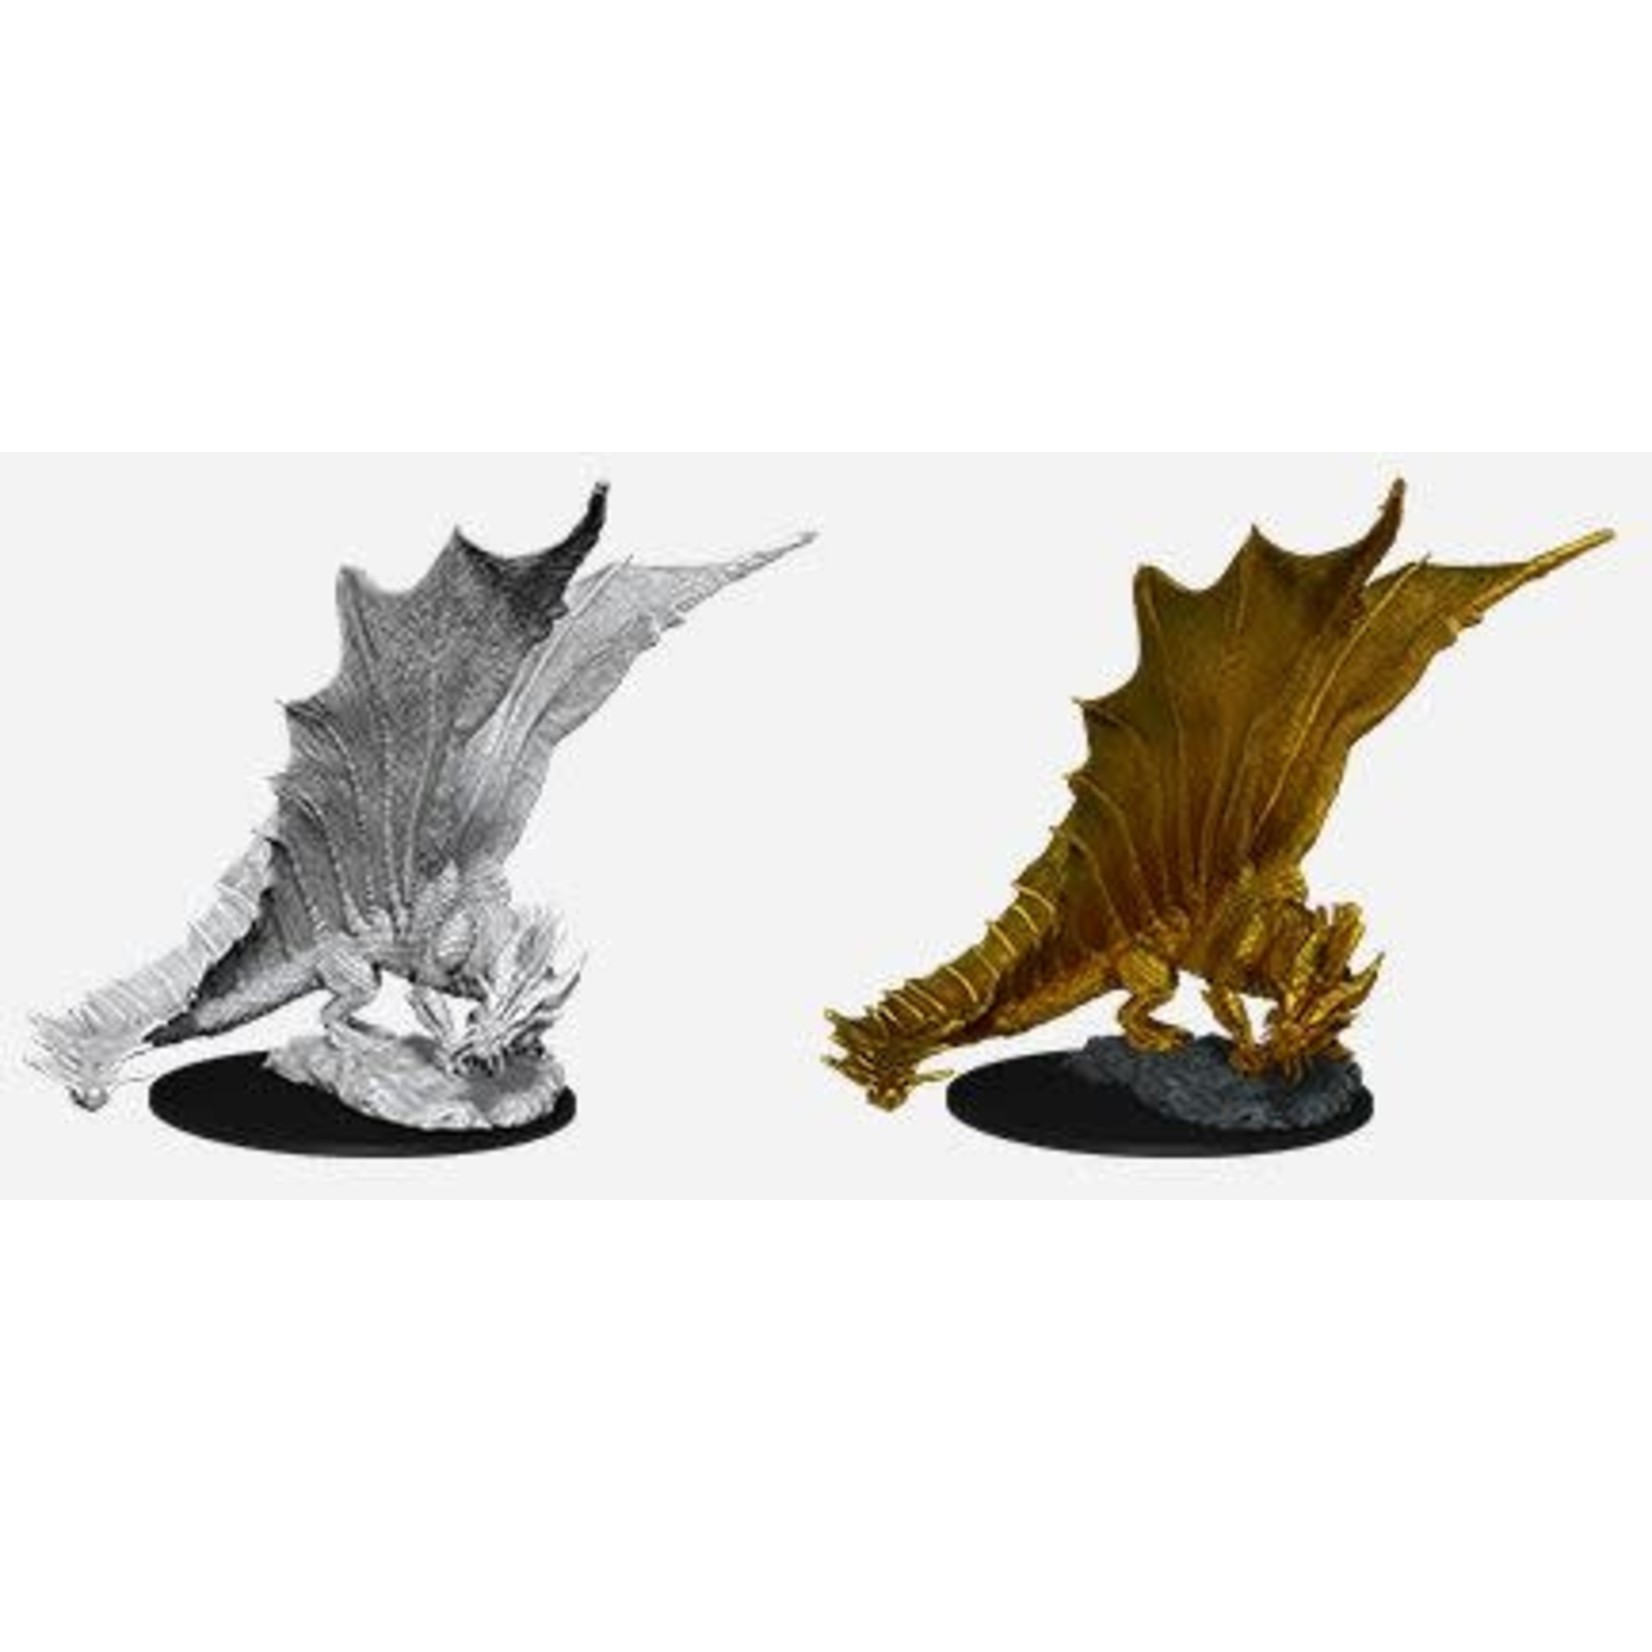 Wizkids Wizkids D&D Nolzur's Marvelous Miniatures: Young Gold Dragon (1)